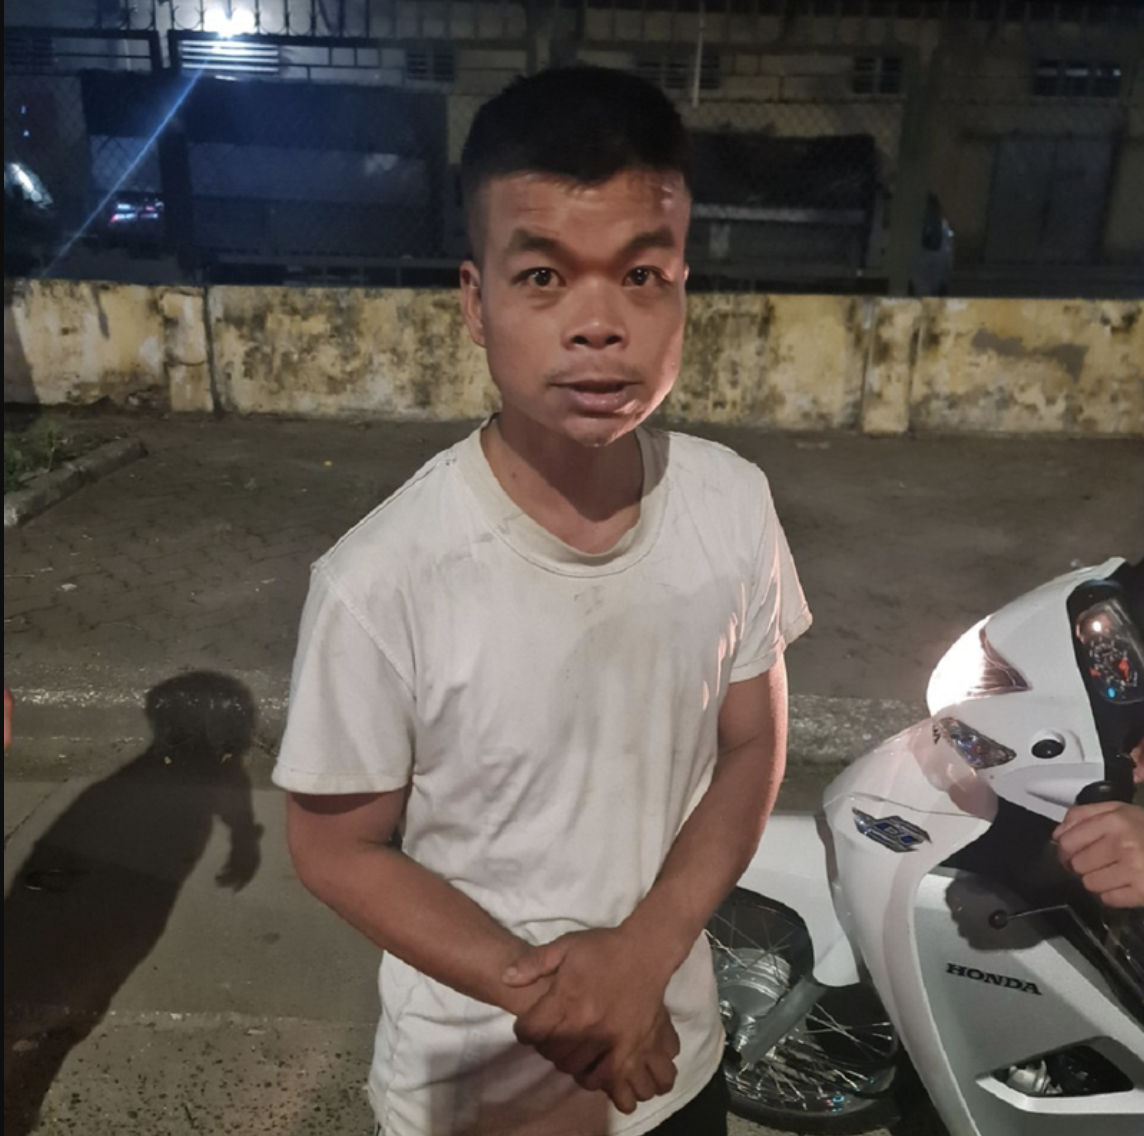 Bùi Văn Giang (35 tuổi, ở huyện Yên Khánh, tỉnh Ninh Bình) tại thời điểm bị bắt giữ